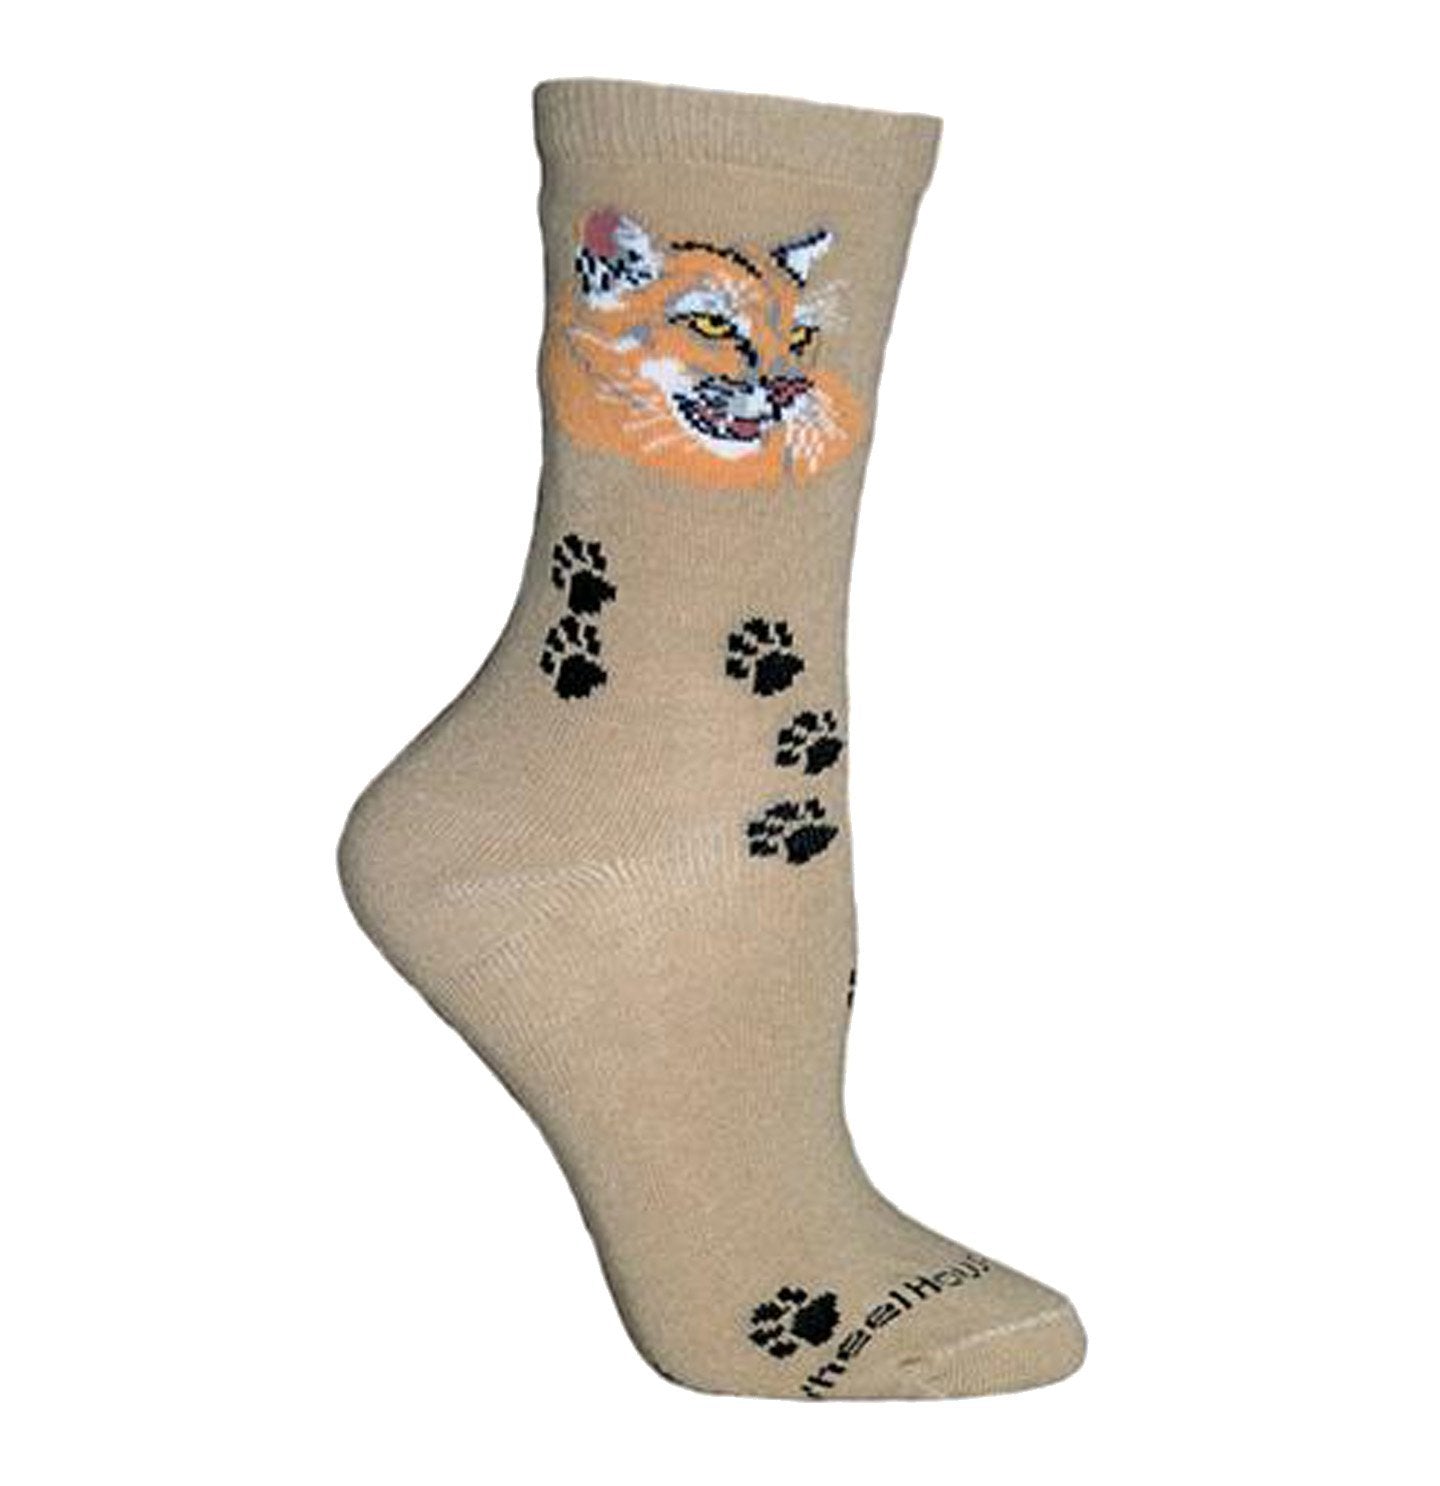 Animal Pride - Mountain Lion on Khaki - Adult Cotton Crew Socks